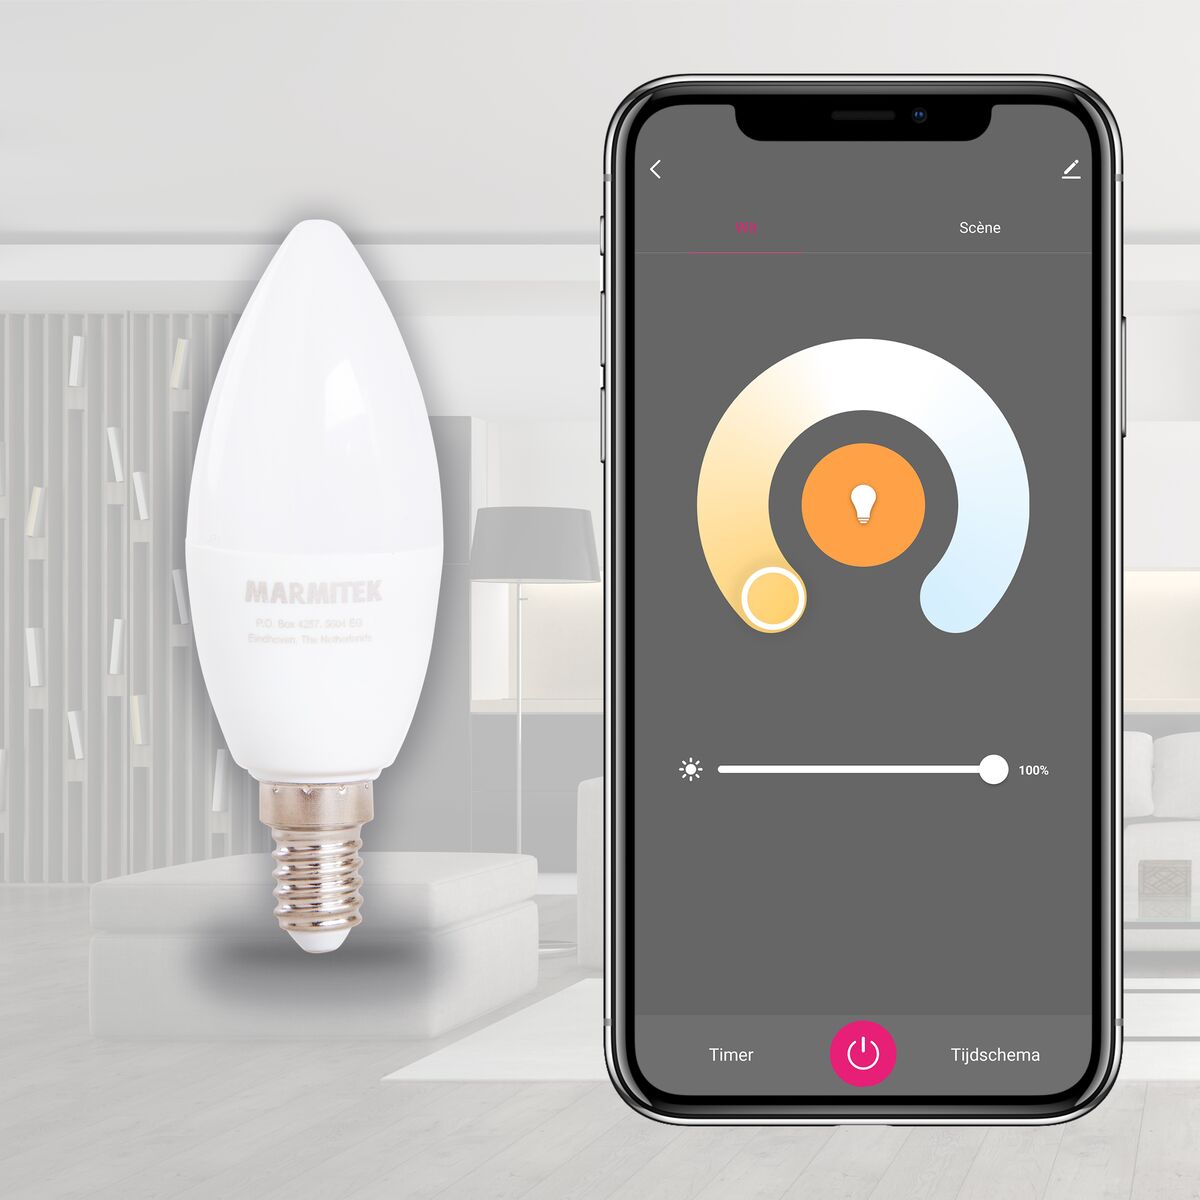 Glow SE - Slimme lamp - E14 - Bediening via app - Wit